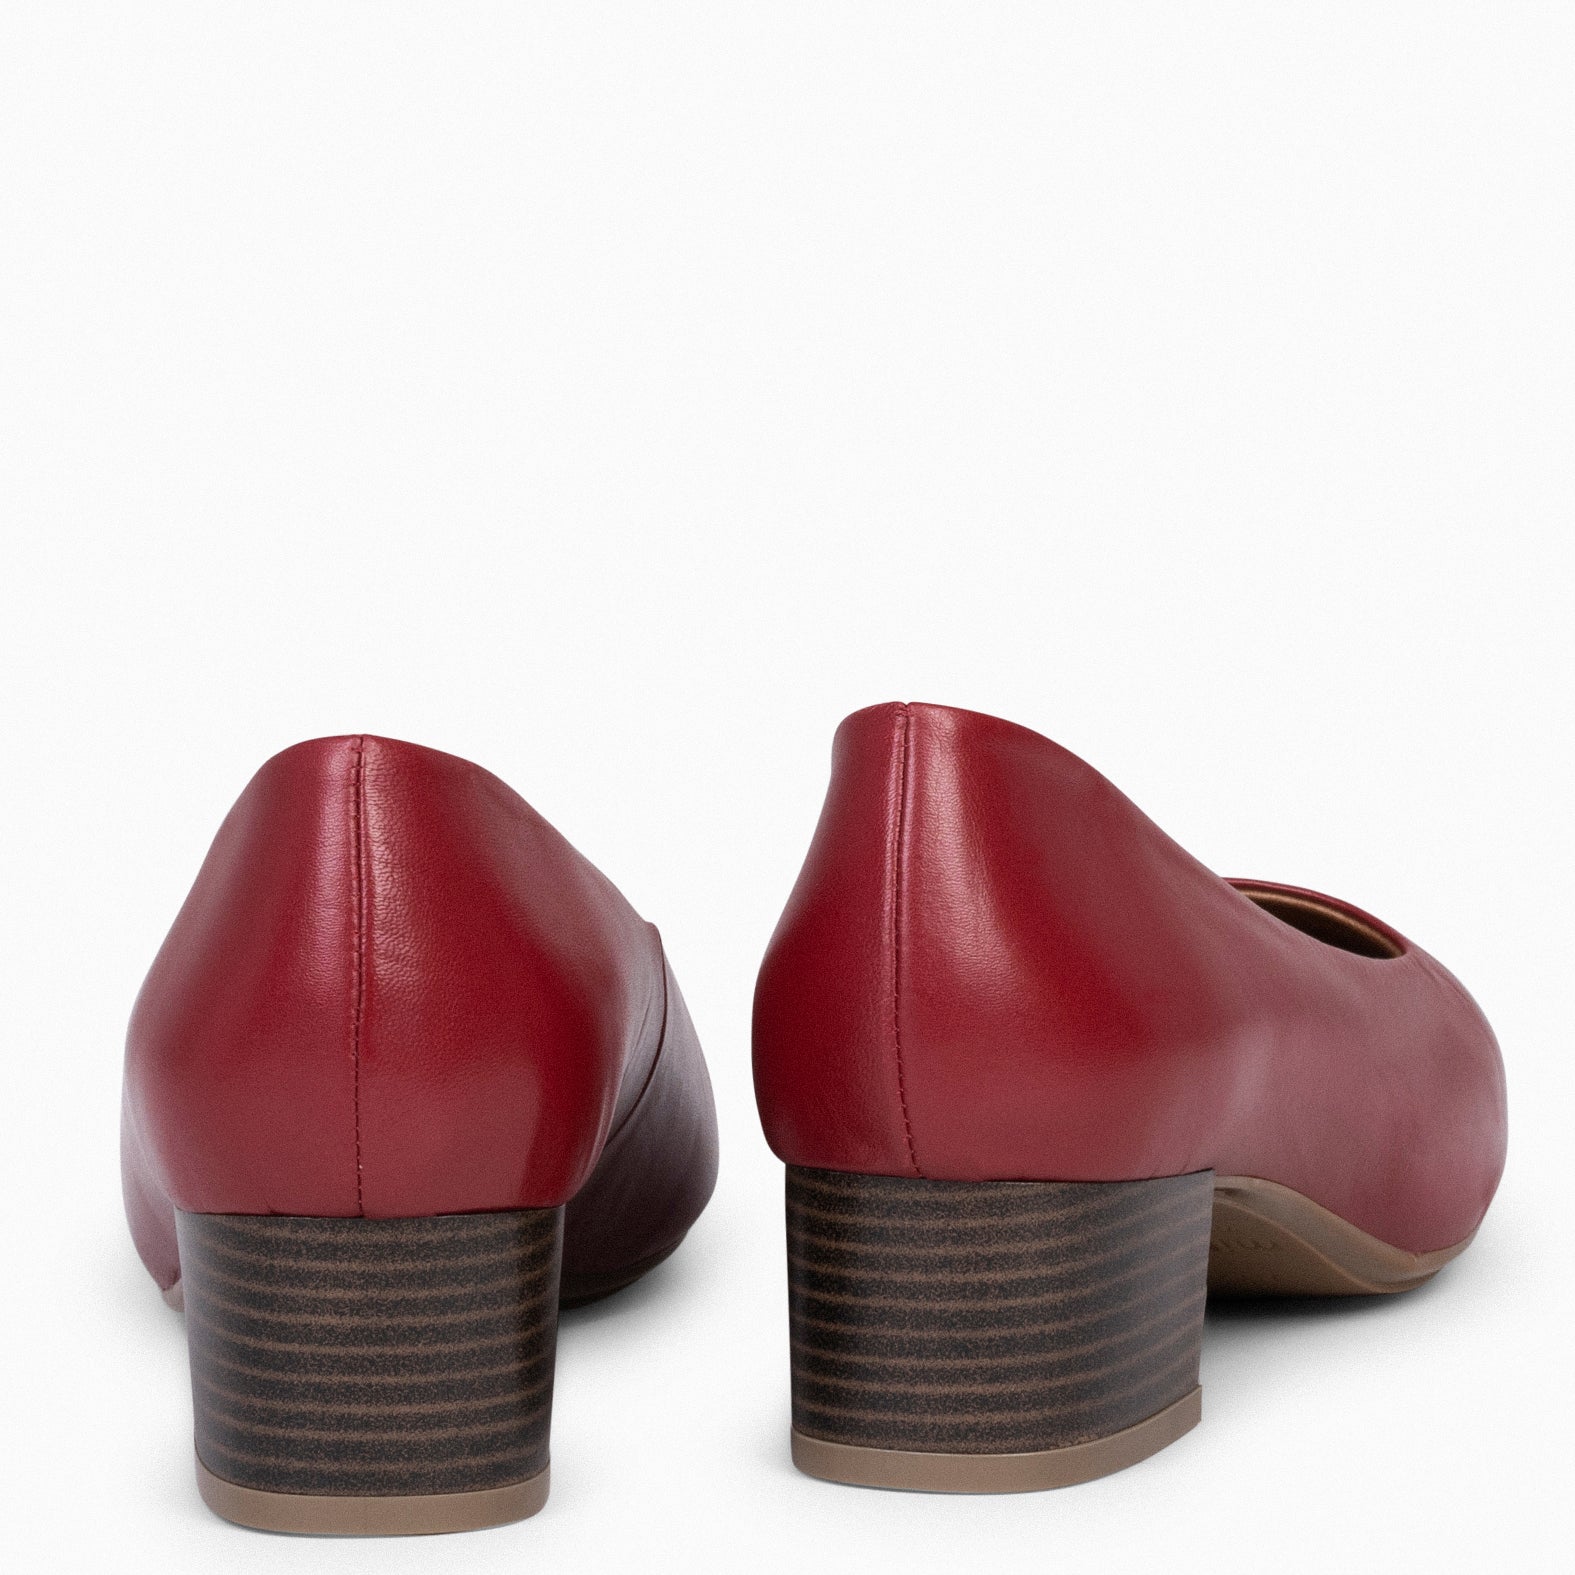 URBAN LADY - Zapatos de tacón bajo de napa GRANATE